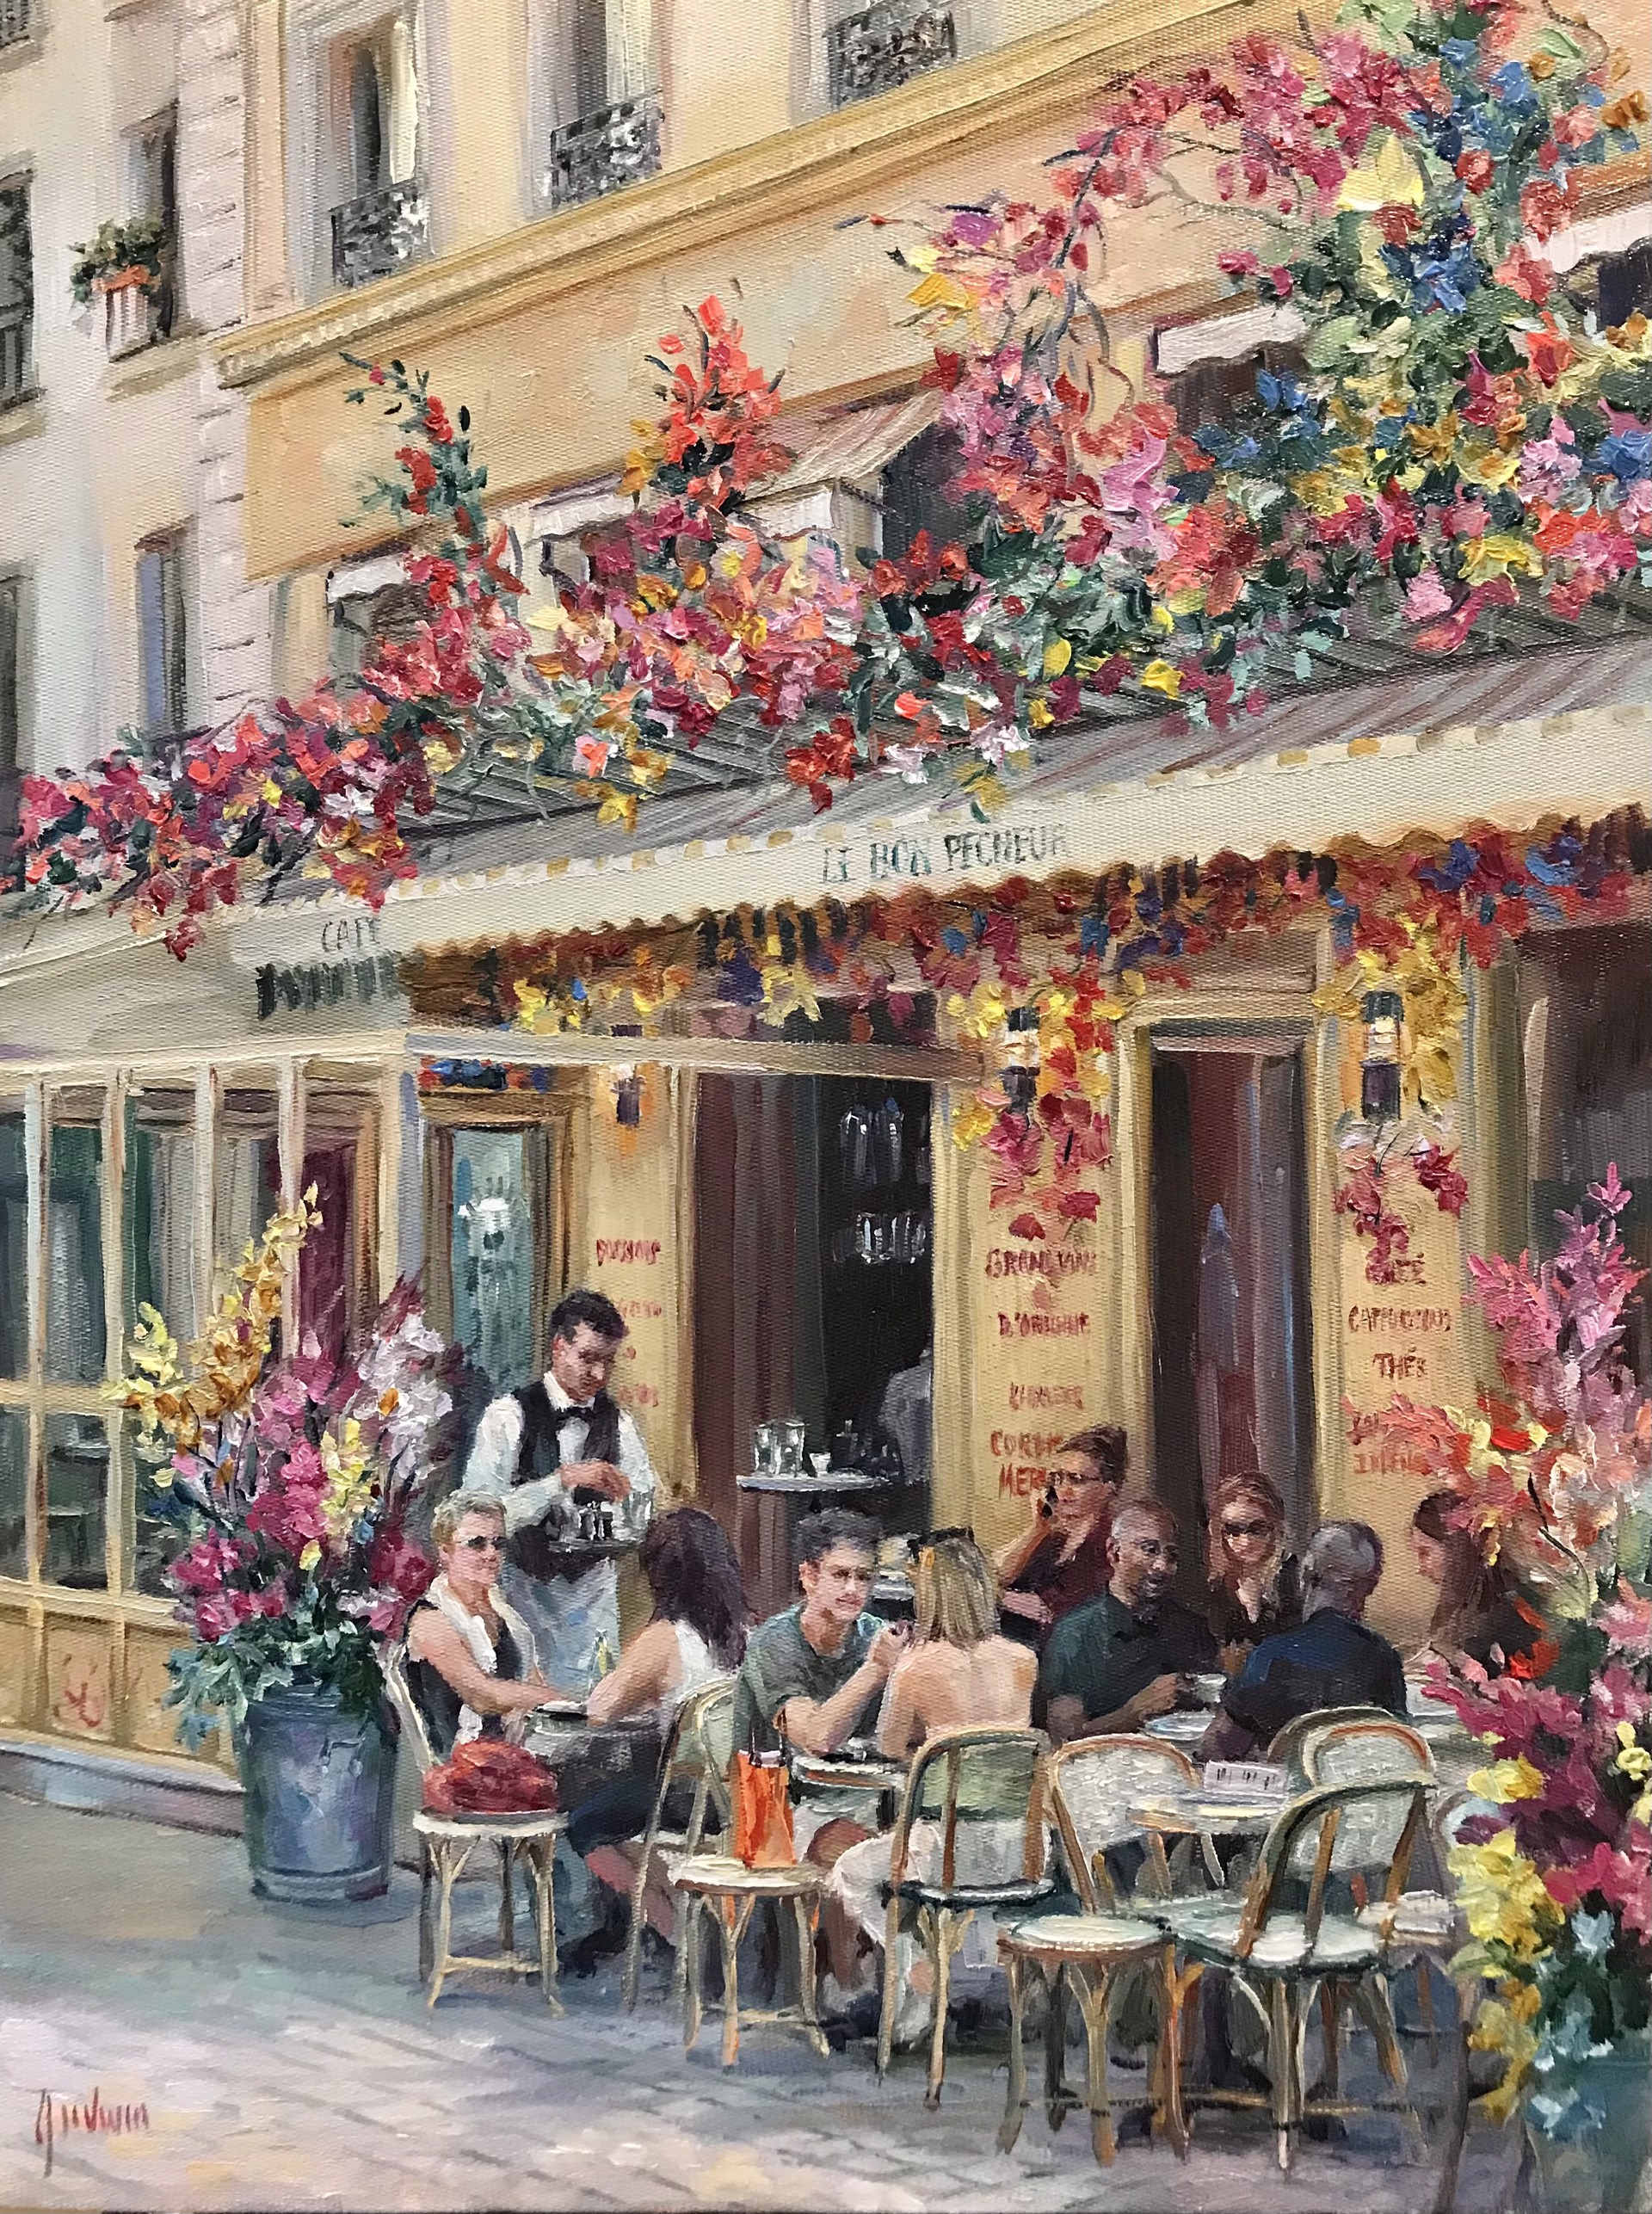 Flowers of Le Bon Pecheur, Paris by Lindsay Goodwin